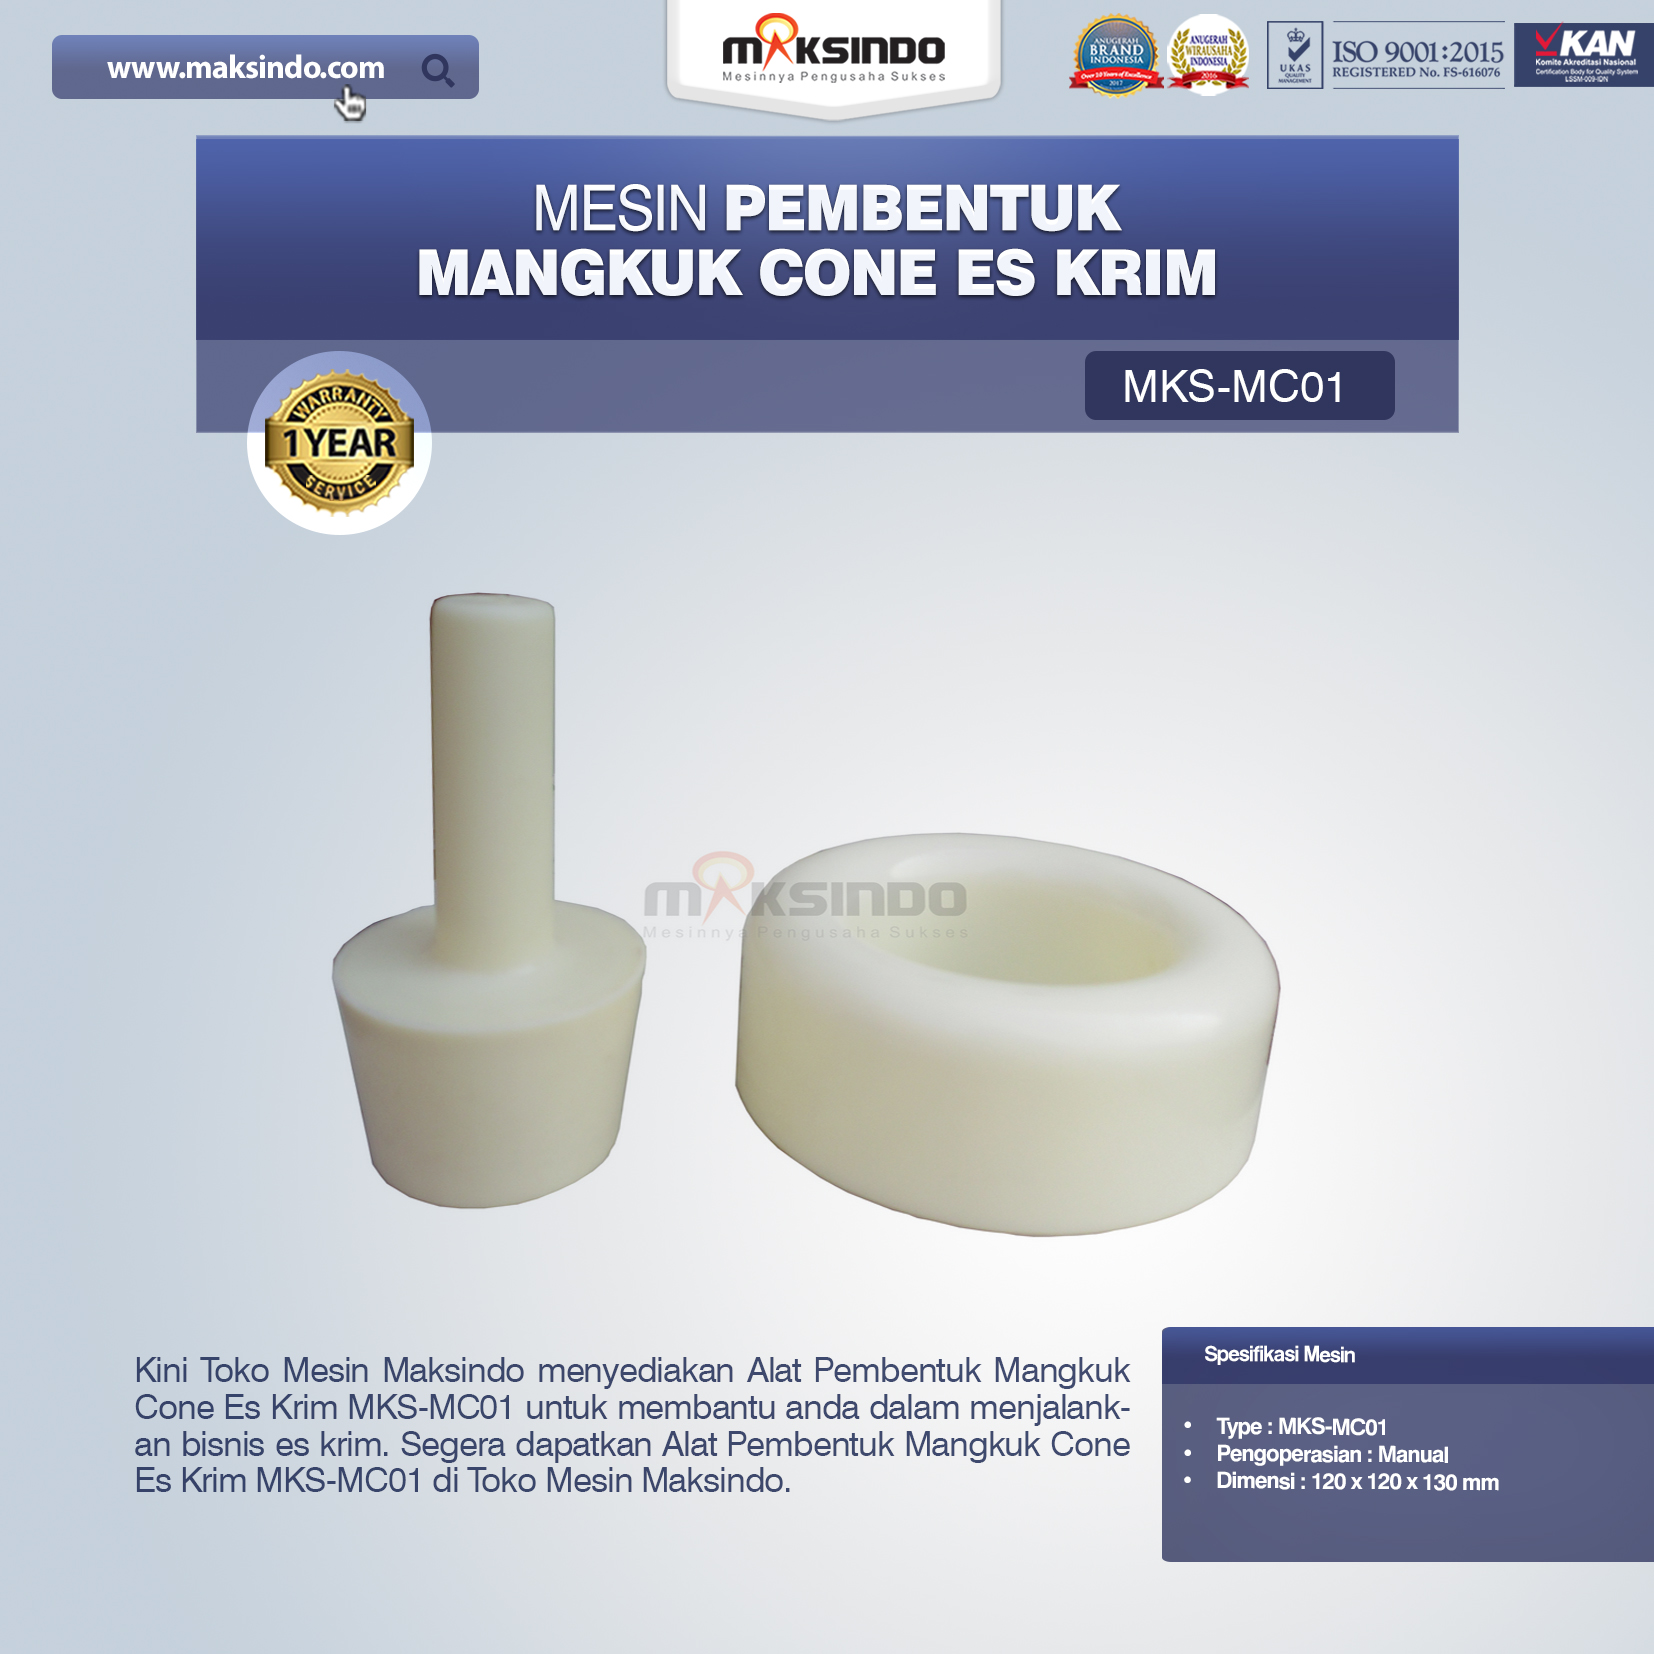 Jual Alat Pembentuk Mangkuk Cone Es Krim MKS-MC01 di Malang